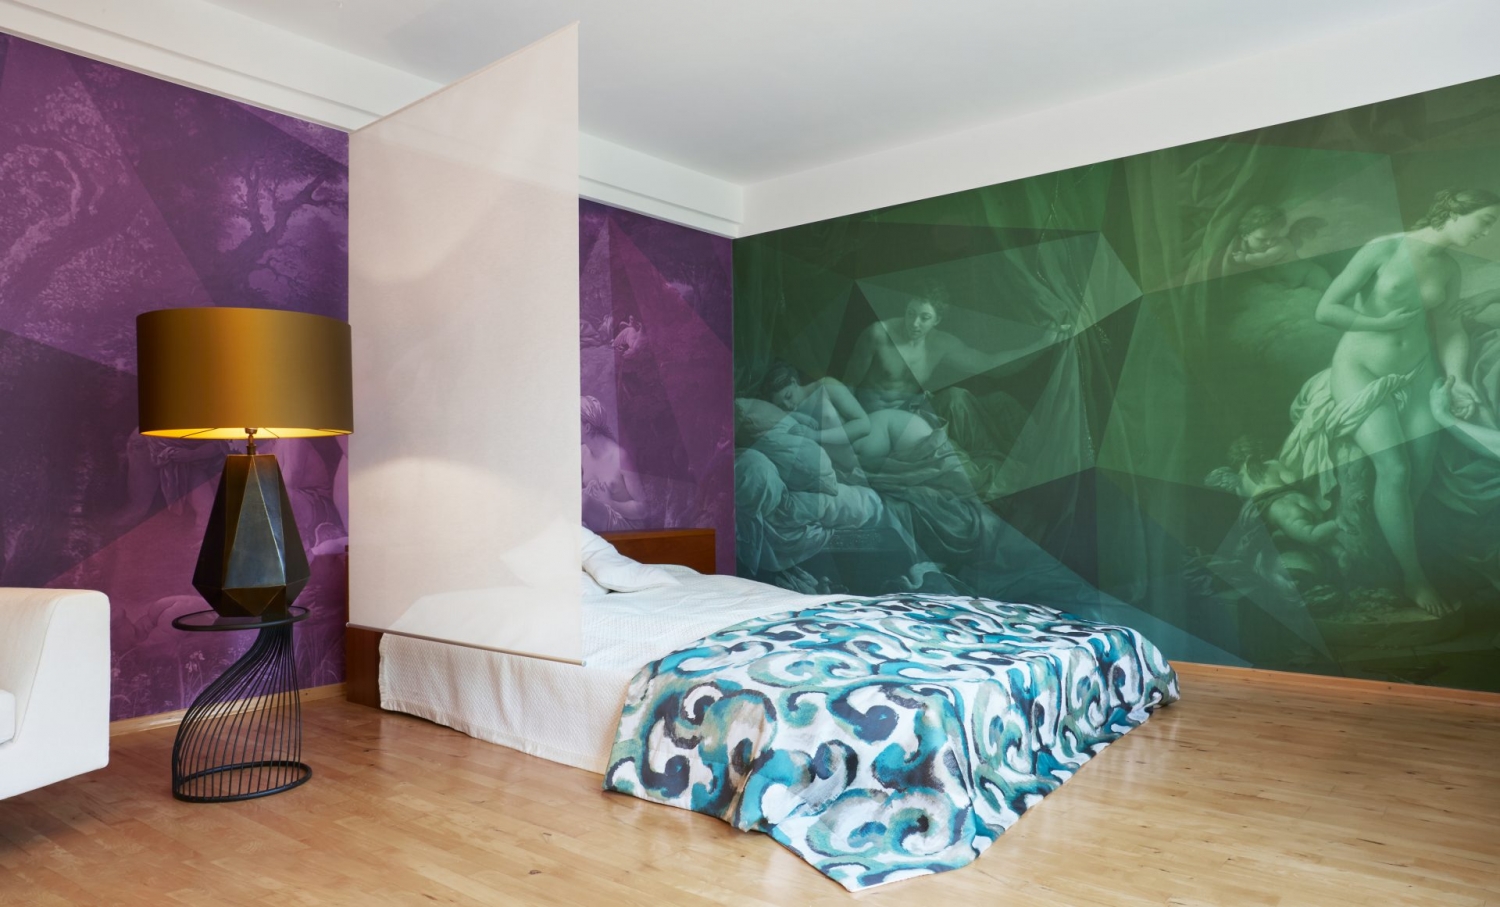 Doppelbett, räumlich getrennt mittels flachen, weißen Organza-Vorhangs, grüner und violetter Tapete mit Renaissance-Motiven